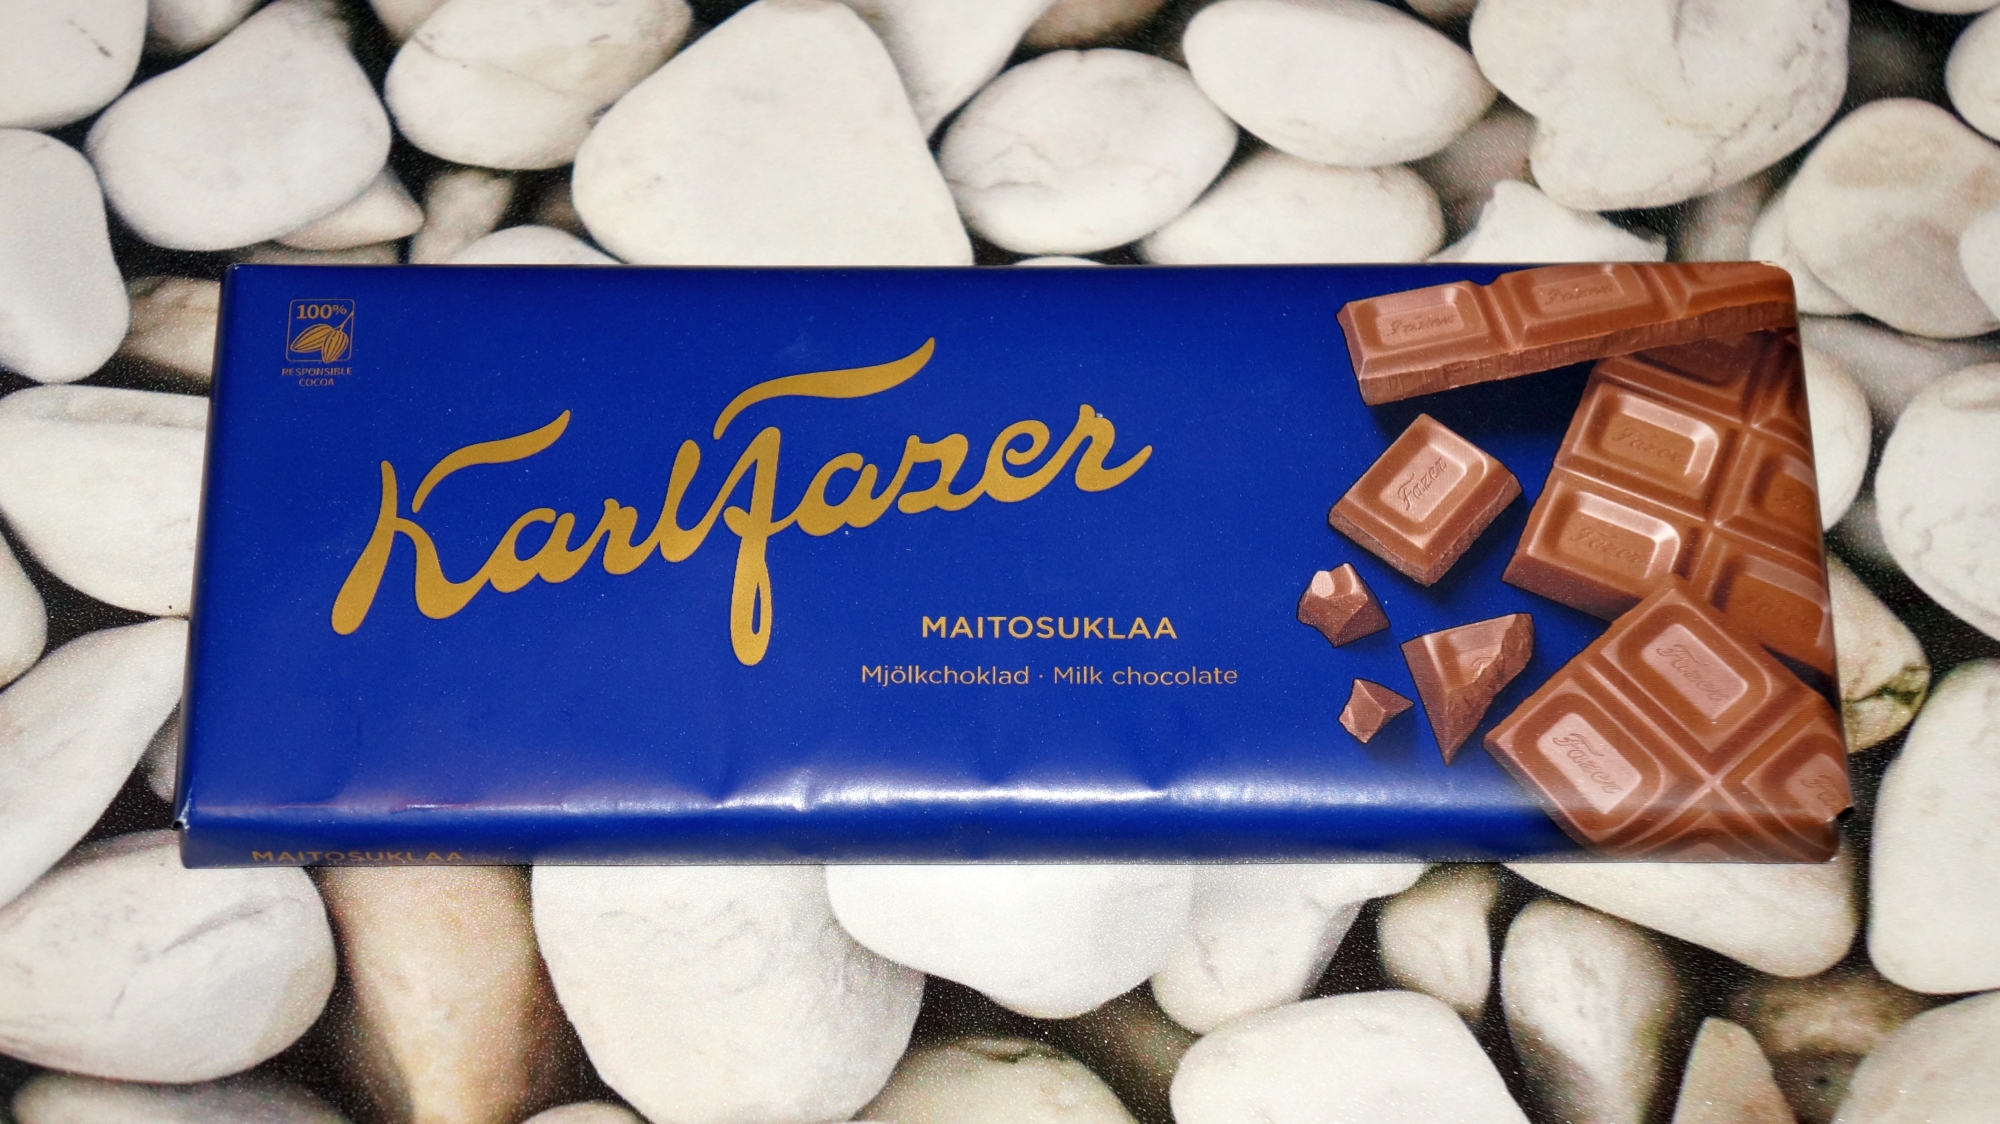 Шоколад Karl Fazer Maitosuklaa